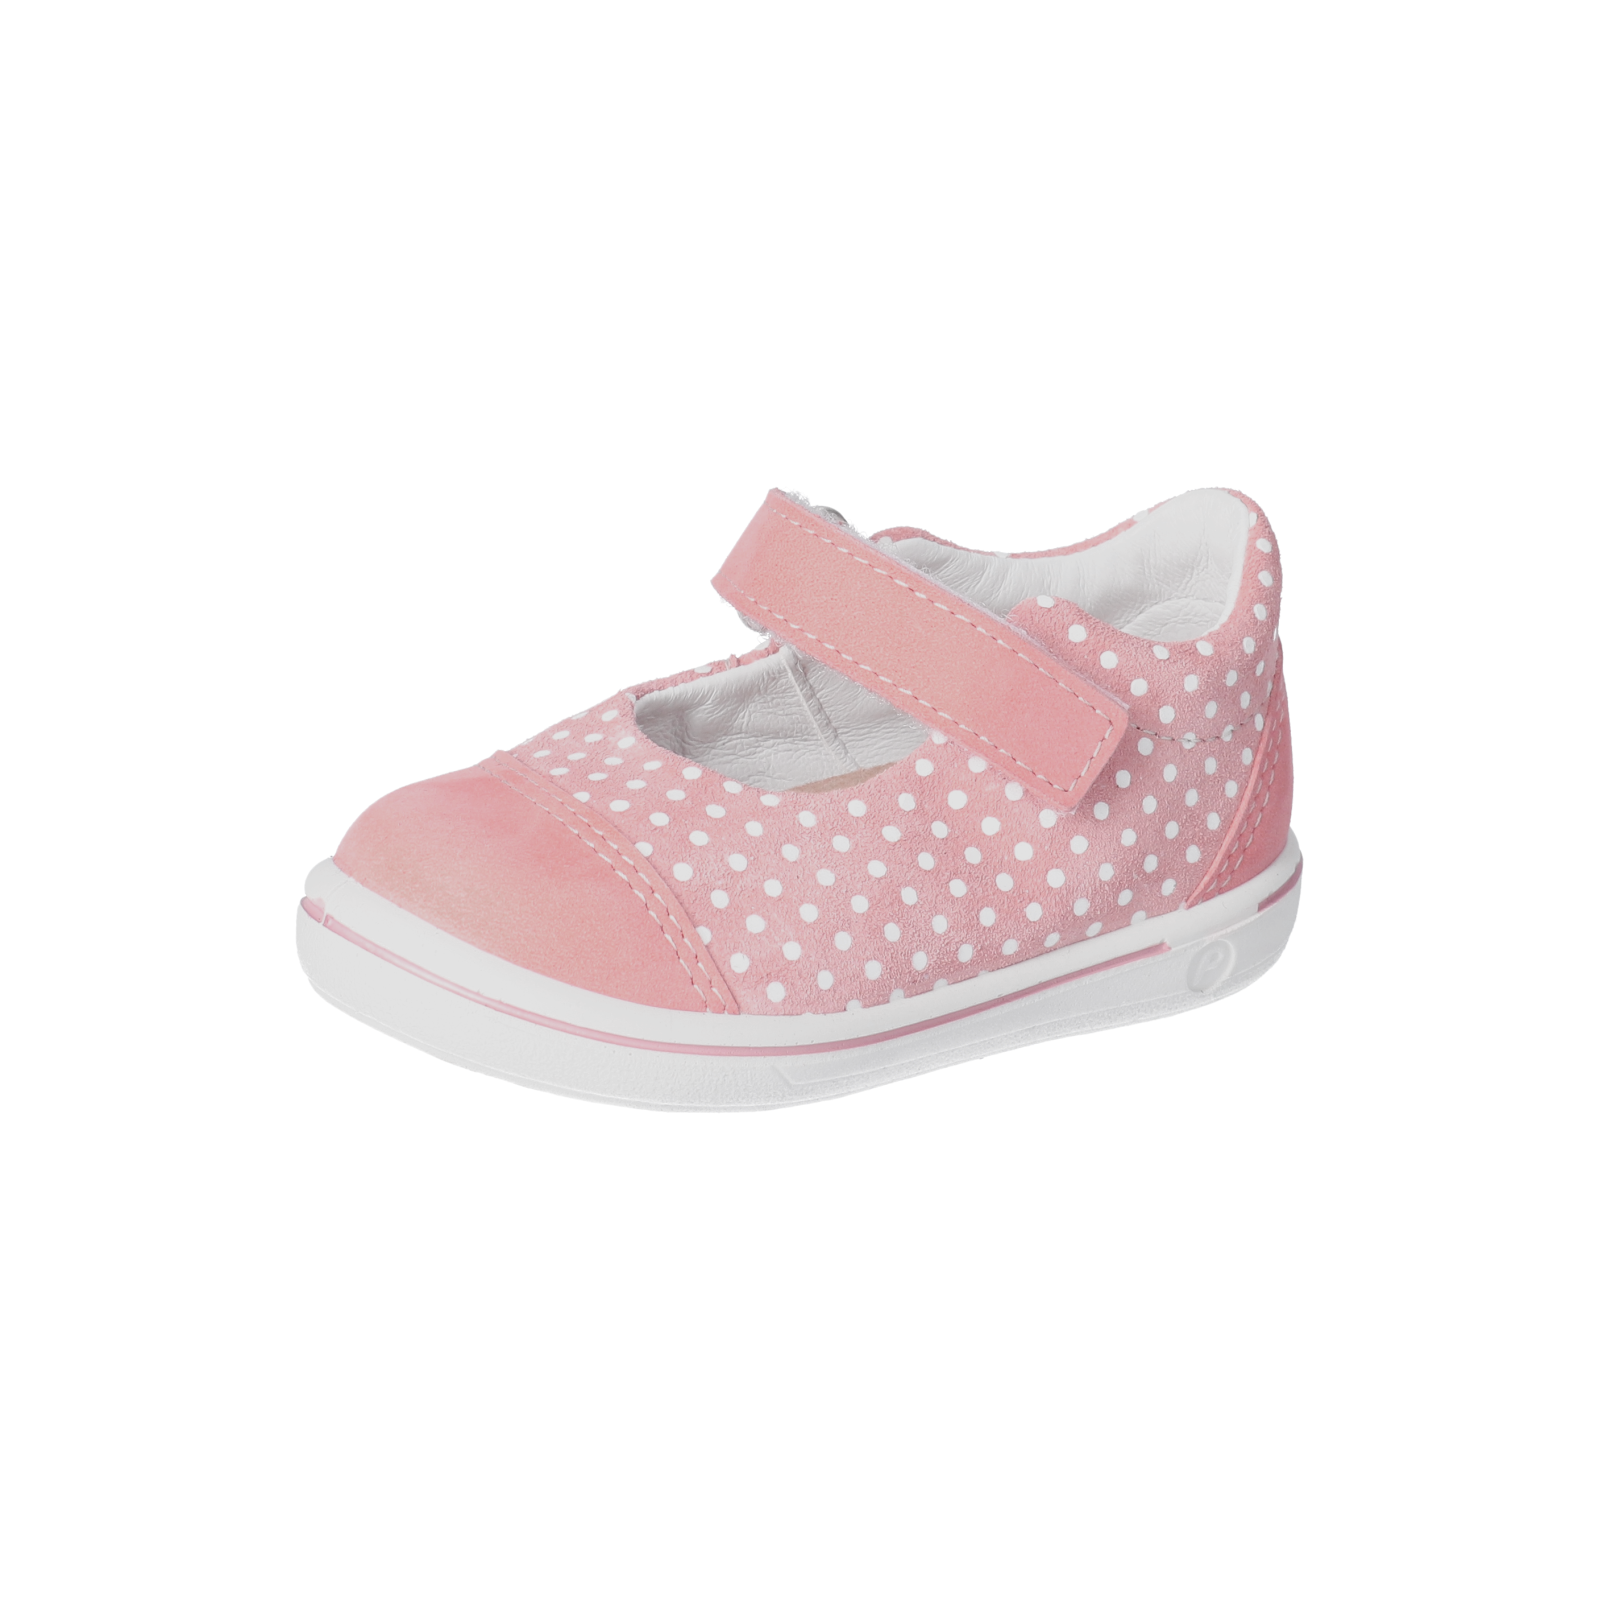 Ricosta Corinne pink polka dot - Kirbys Footwear Ltd